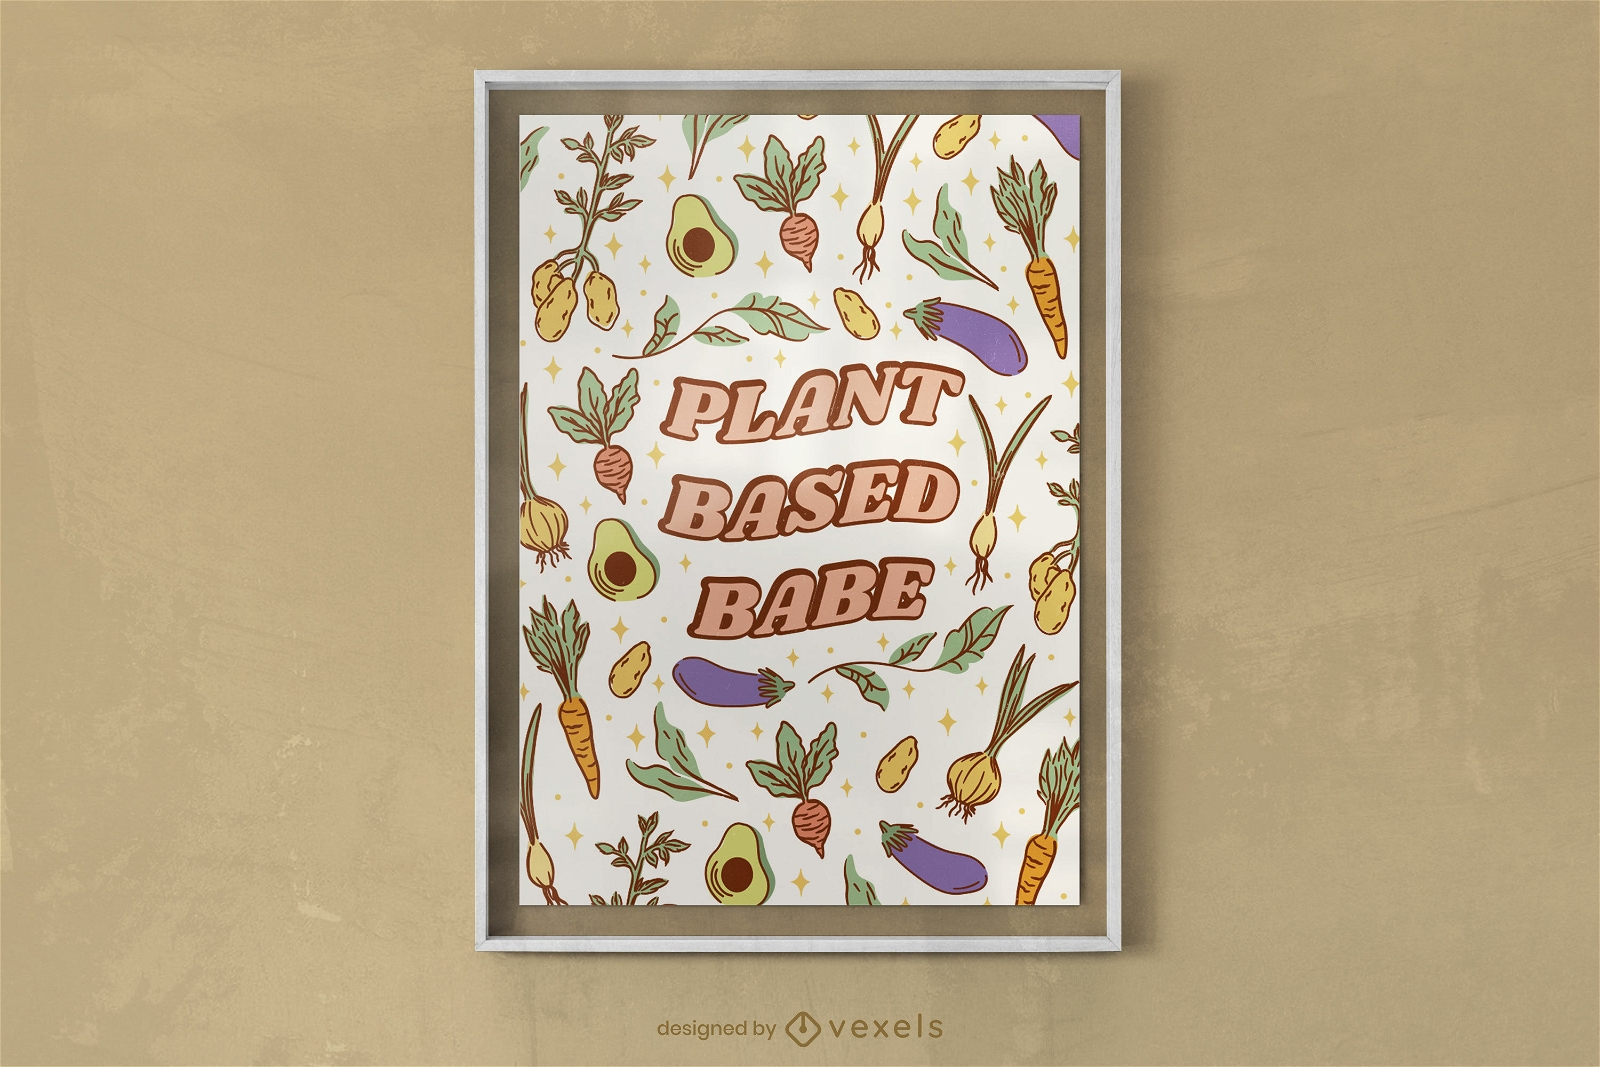 Diseño de póster vegano a base de plantas.